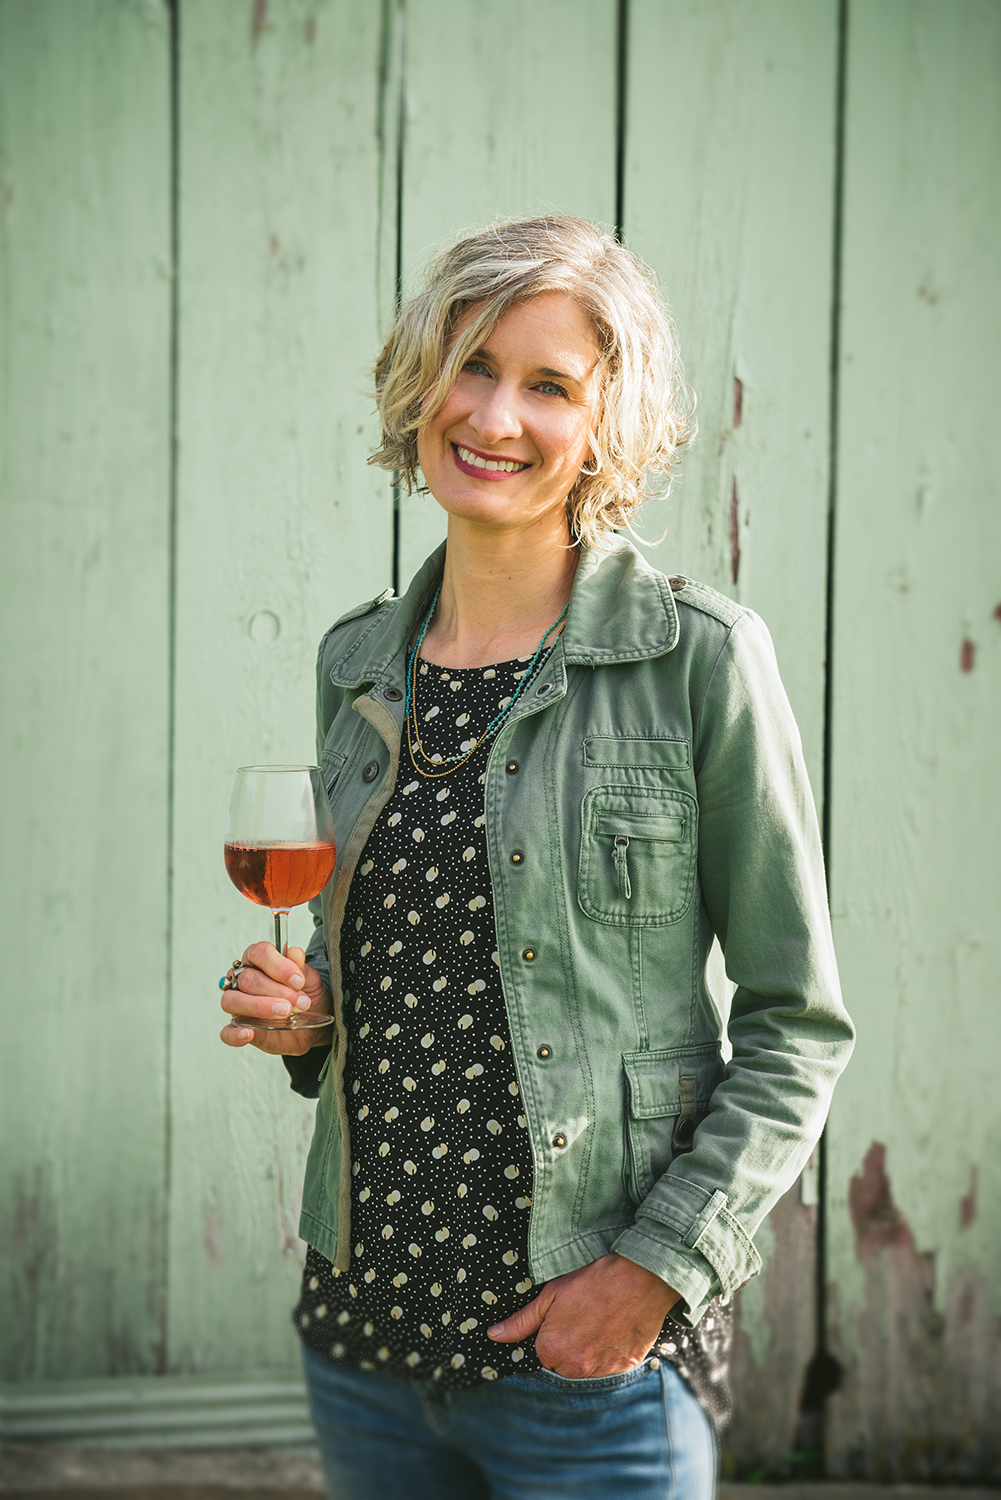 Kasey Wierzba, women winemaker of Shady Lane Cellars